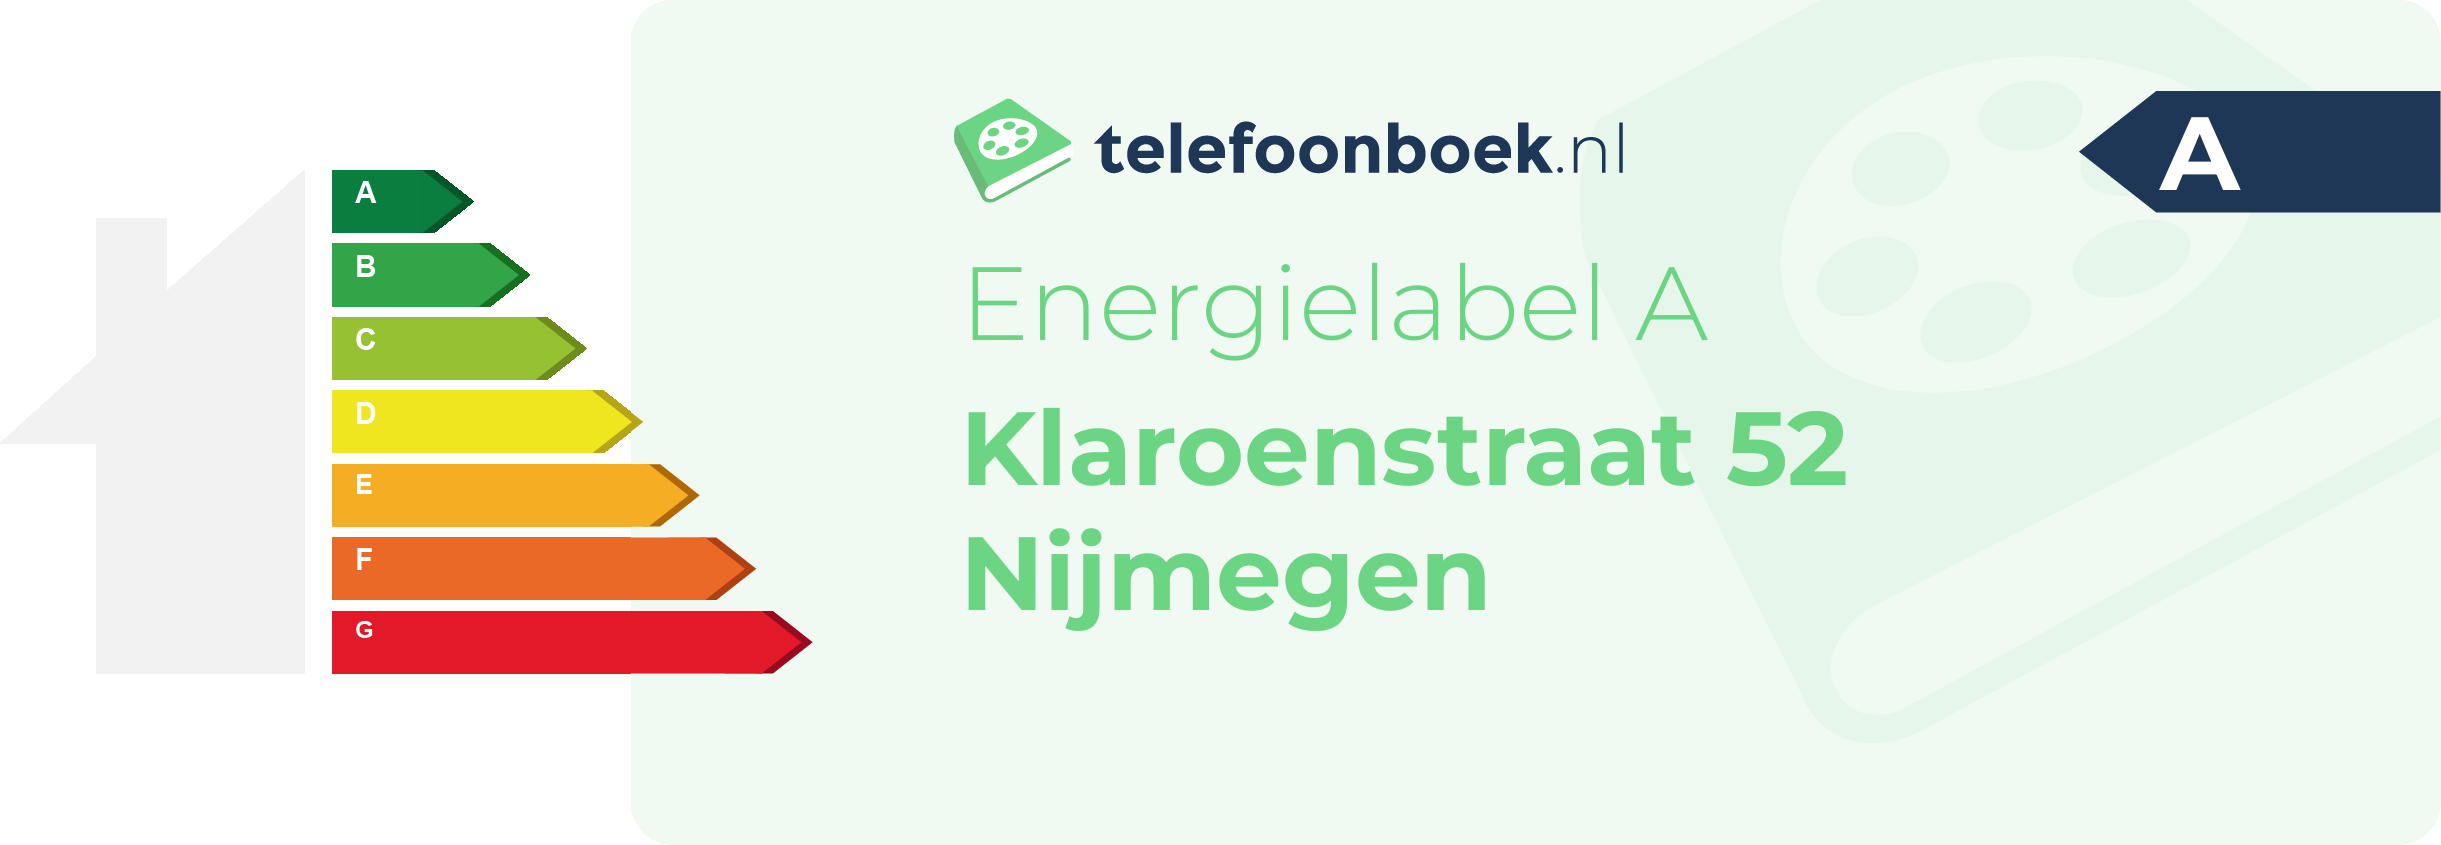 Energielabel Klaroenstraat 52 Nijmegen